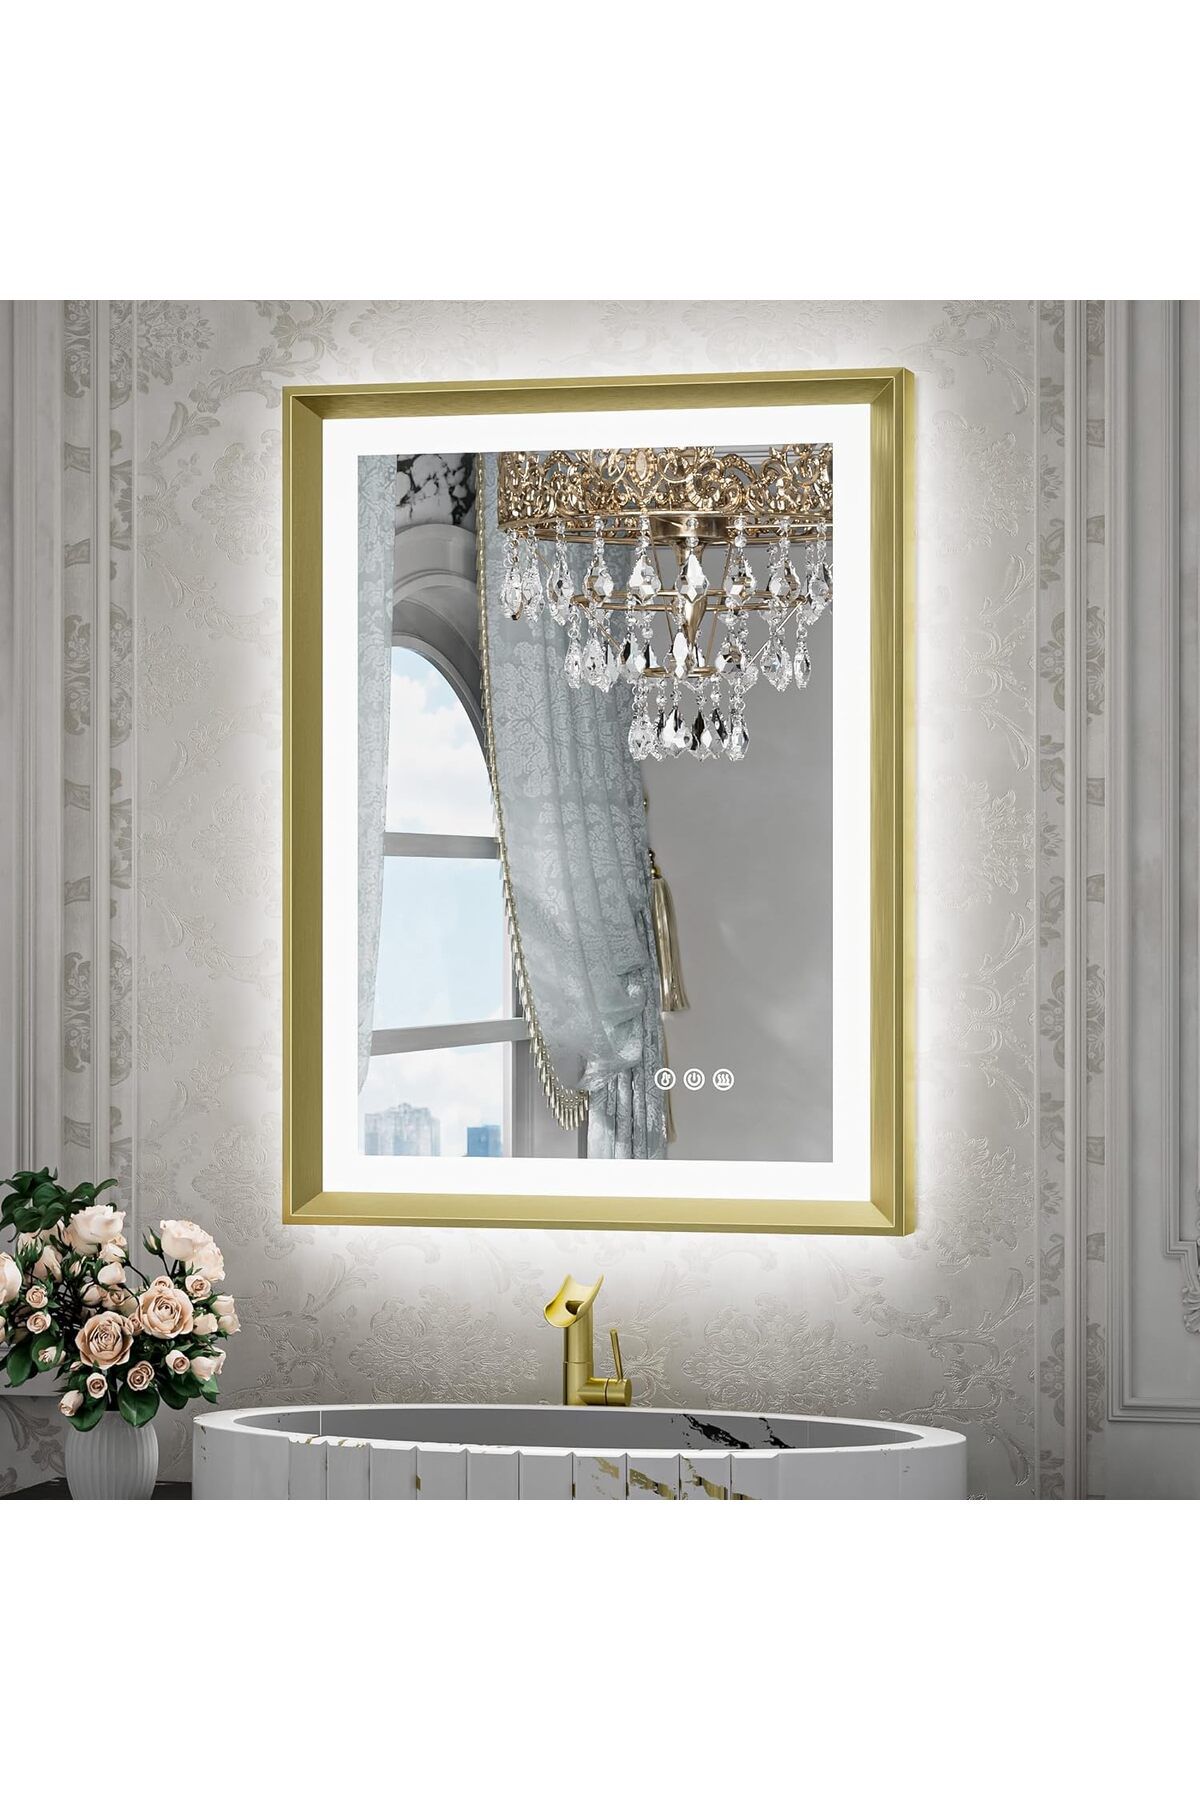 TETOTE Şık ve Modern LED Banyo Aynası:  Altın Metal Çerçeve, Önden ve Arkadan Aydınlatma - Buğu Önleme